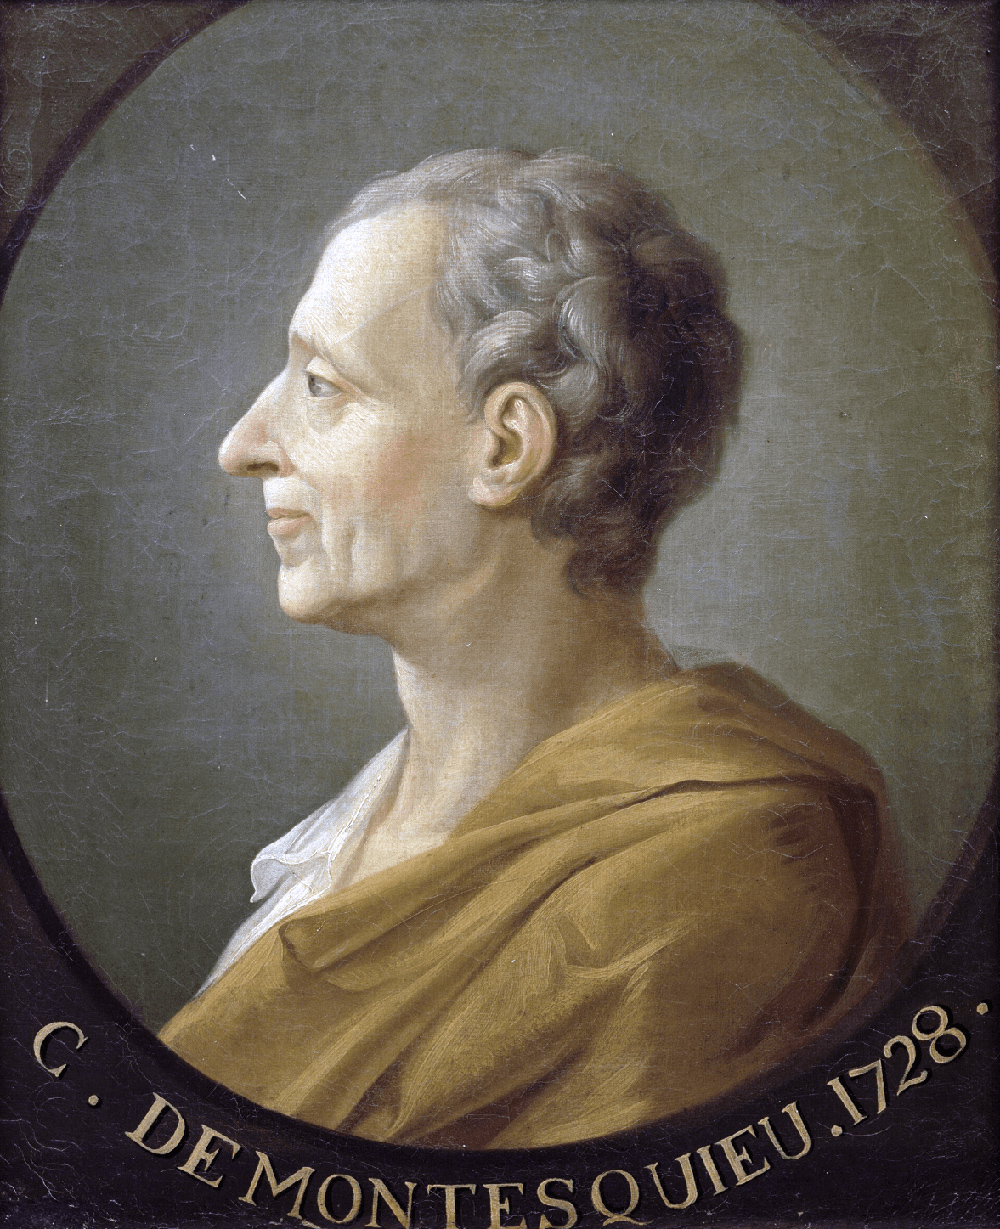 Retrato de Montesquieu realizado por el pintor francés Jacques-Antoine Dassier a mediados del siglo XVIII.